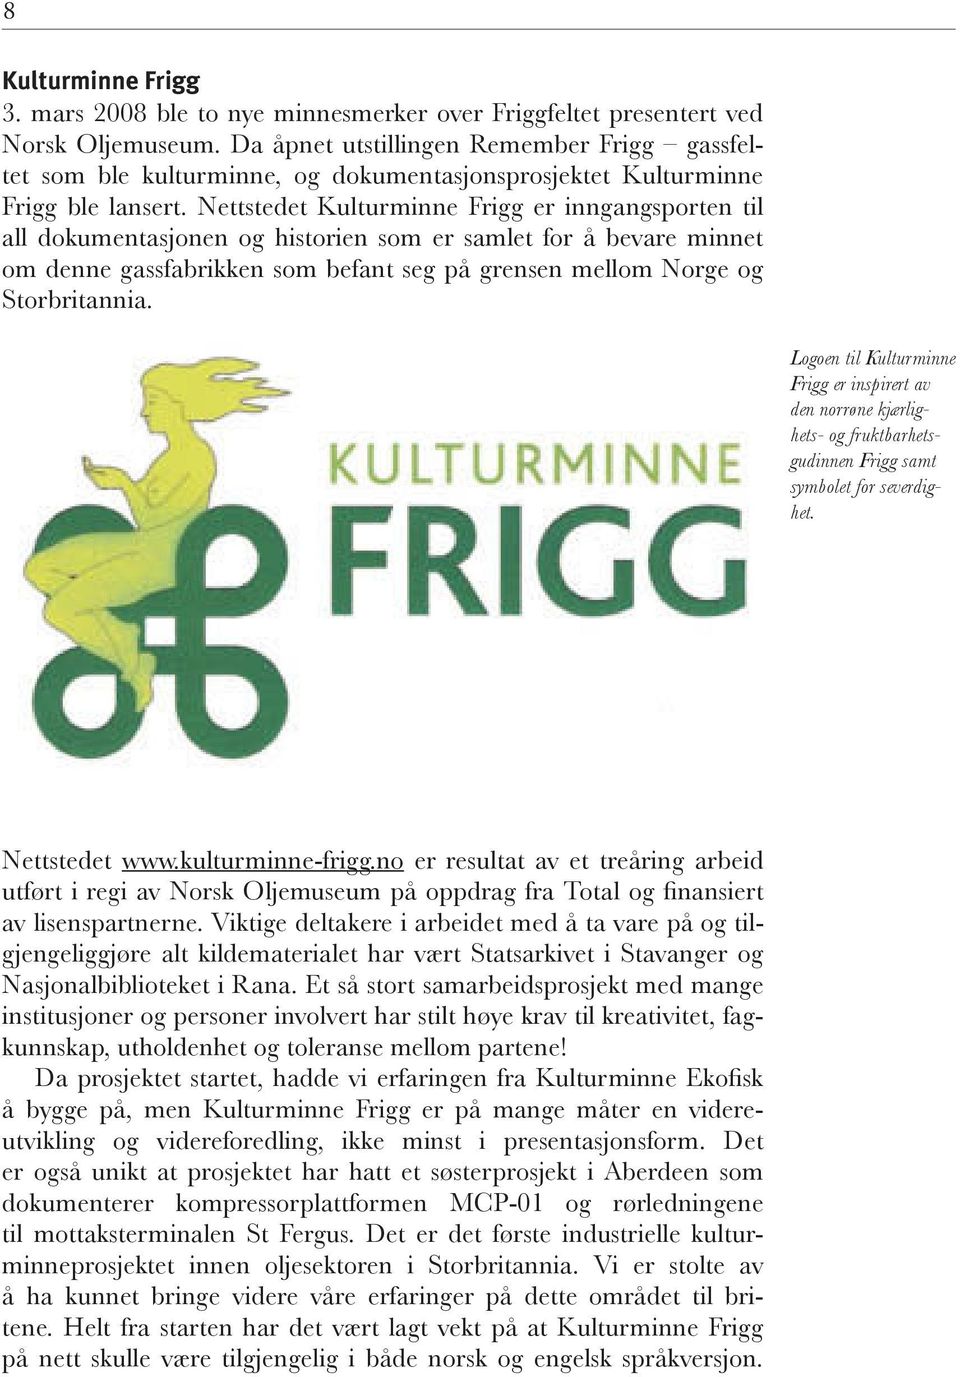 Nettstedet Kulturminne Frigg er inngangsporten til all dokumentasjonen og historien som er samlet for å bevare minnet om denne gassfabrikken som befant seg på grensen mellom Norge og Storbritannia.